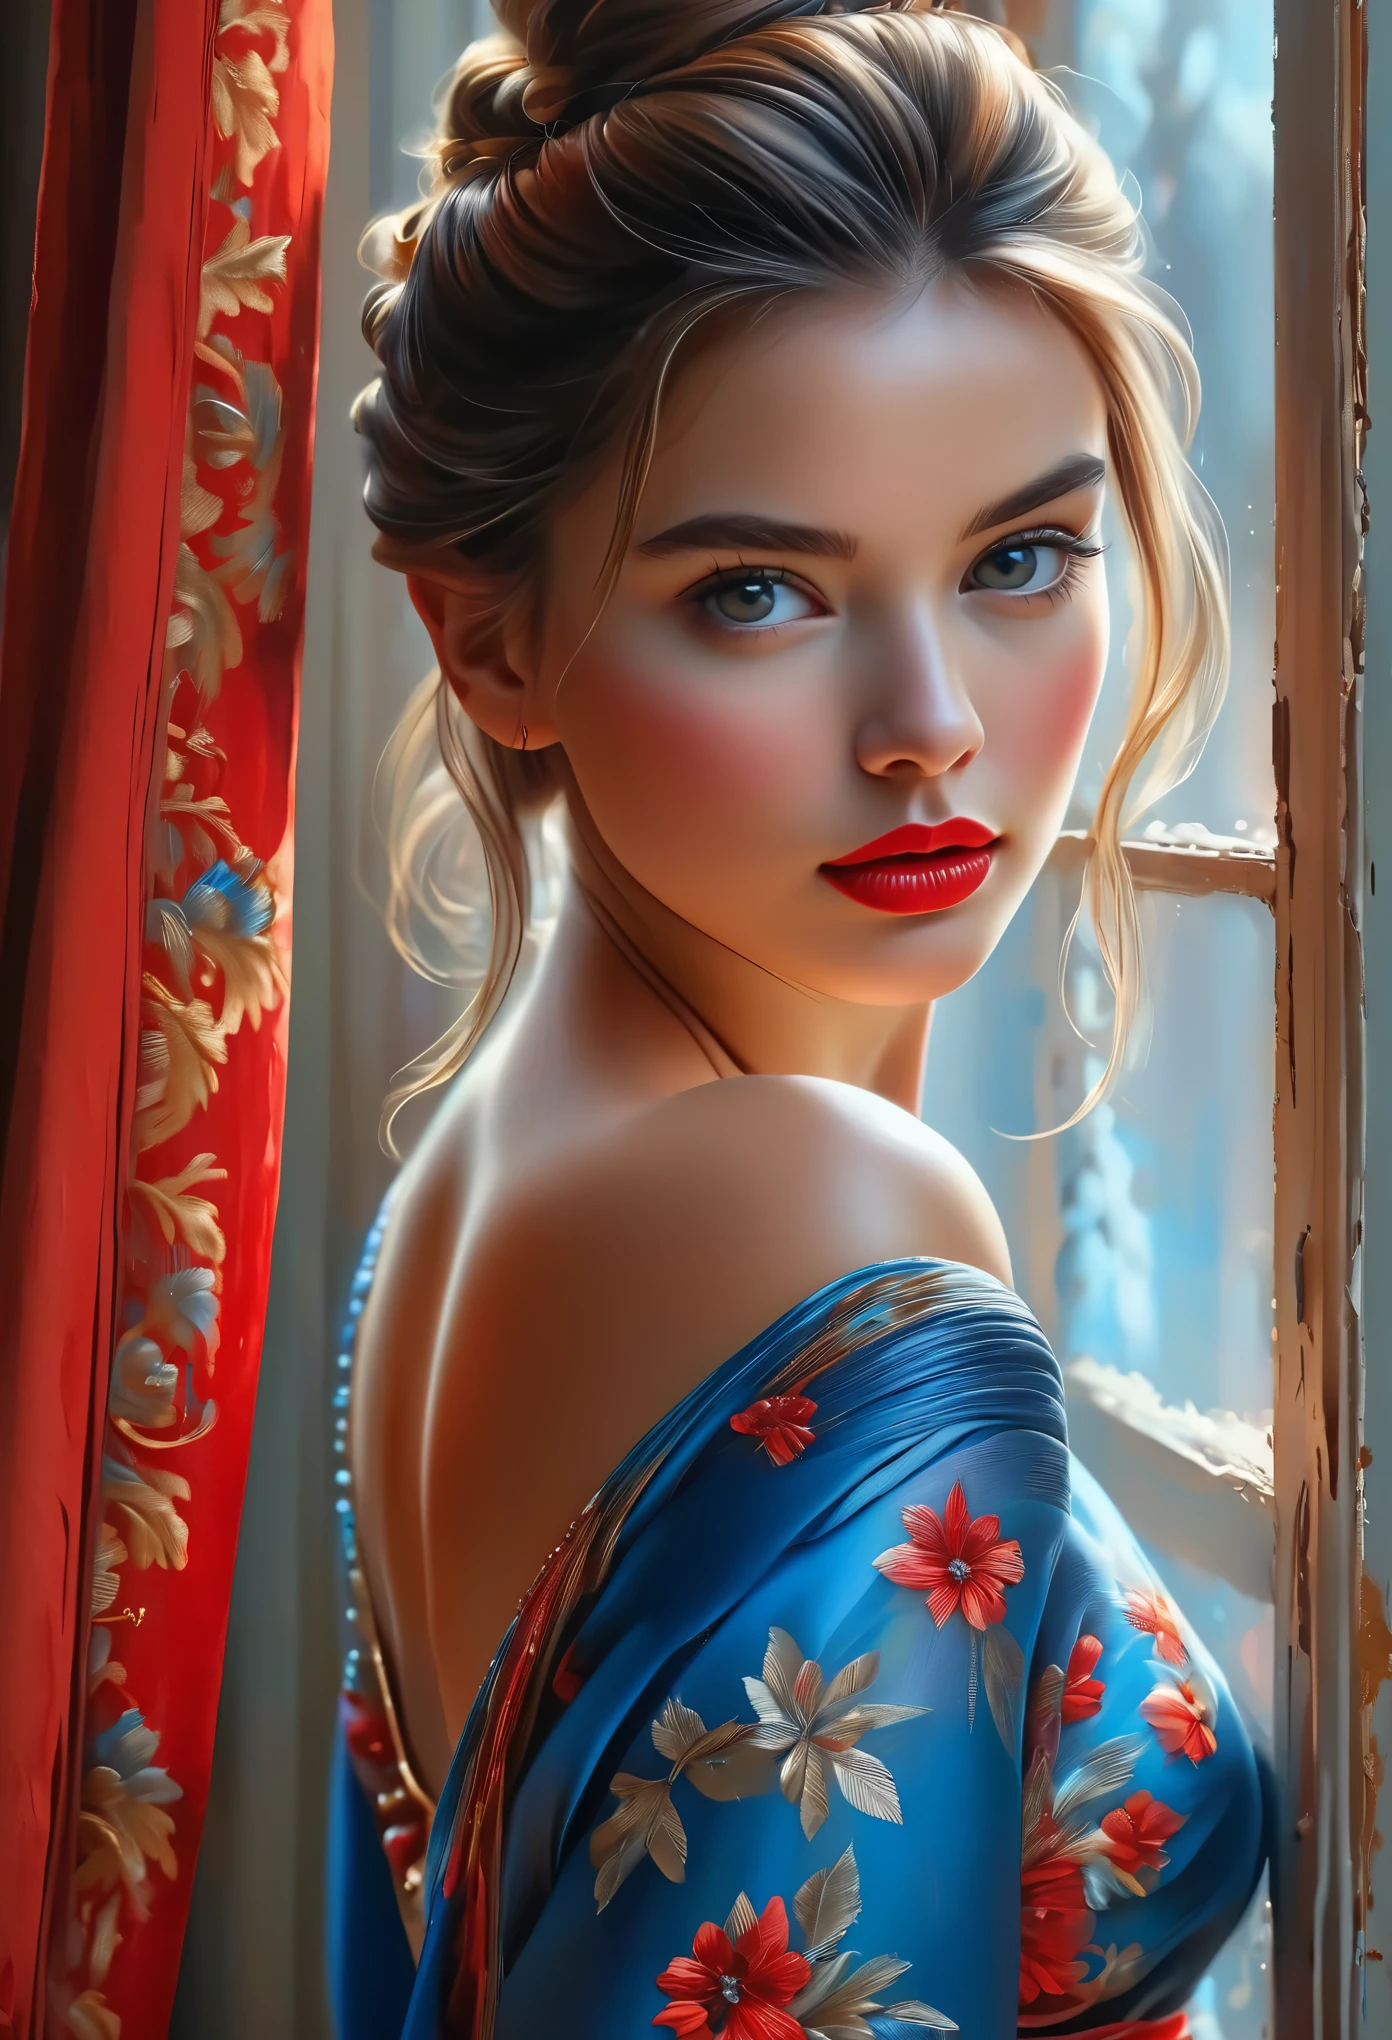 (最高品質, 4K, 8k, 高解像度, 傑作: 1.2), (非常に詳細な, 現実的, 写実的な:1.37)魅惑的な少女, 赤と青の印象的な衣装を身にまとって, 強靭さと決意の雰囲気を漂わせながら窓の前に立つ. 彼女の魅惑的な目は精巧に描かれている, あらゆるきらめきと深みを捉える, 彼女の唇は魅惑的で魅惑的な美しさを誇っています. 細部までこだわった作りは顔全体に及んでいる, それぞれの輪郭と特徴が完璧に細心の注意を払って表現されている, 視聴者を引き込むハイパーリアリズムの感覚を生み出す. 

女の子の服装, 油絵を彷彿とさせる, それ自体が芸術作品です. 生地, 鮮やかな筆遣いを巧みに表現した, 彼女の全体的な外見に躍動感を与える. それはまさにアーティストの才能の反映である, 熟練の技を披露する, (閲覧注意:1.5), シニヨンの髪型, 美しい乳首